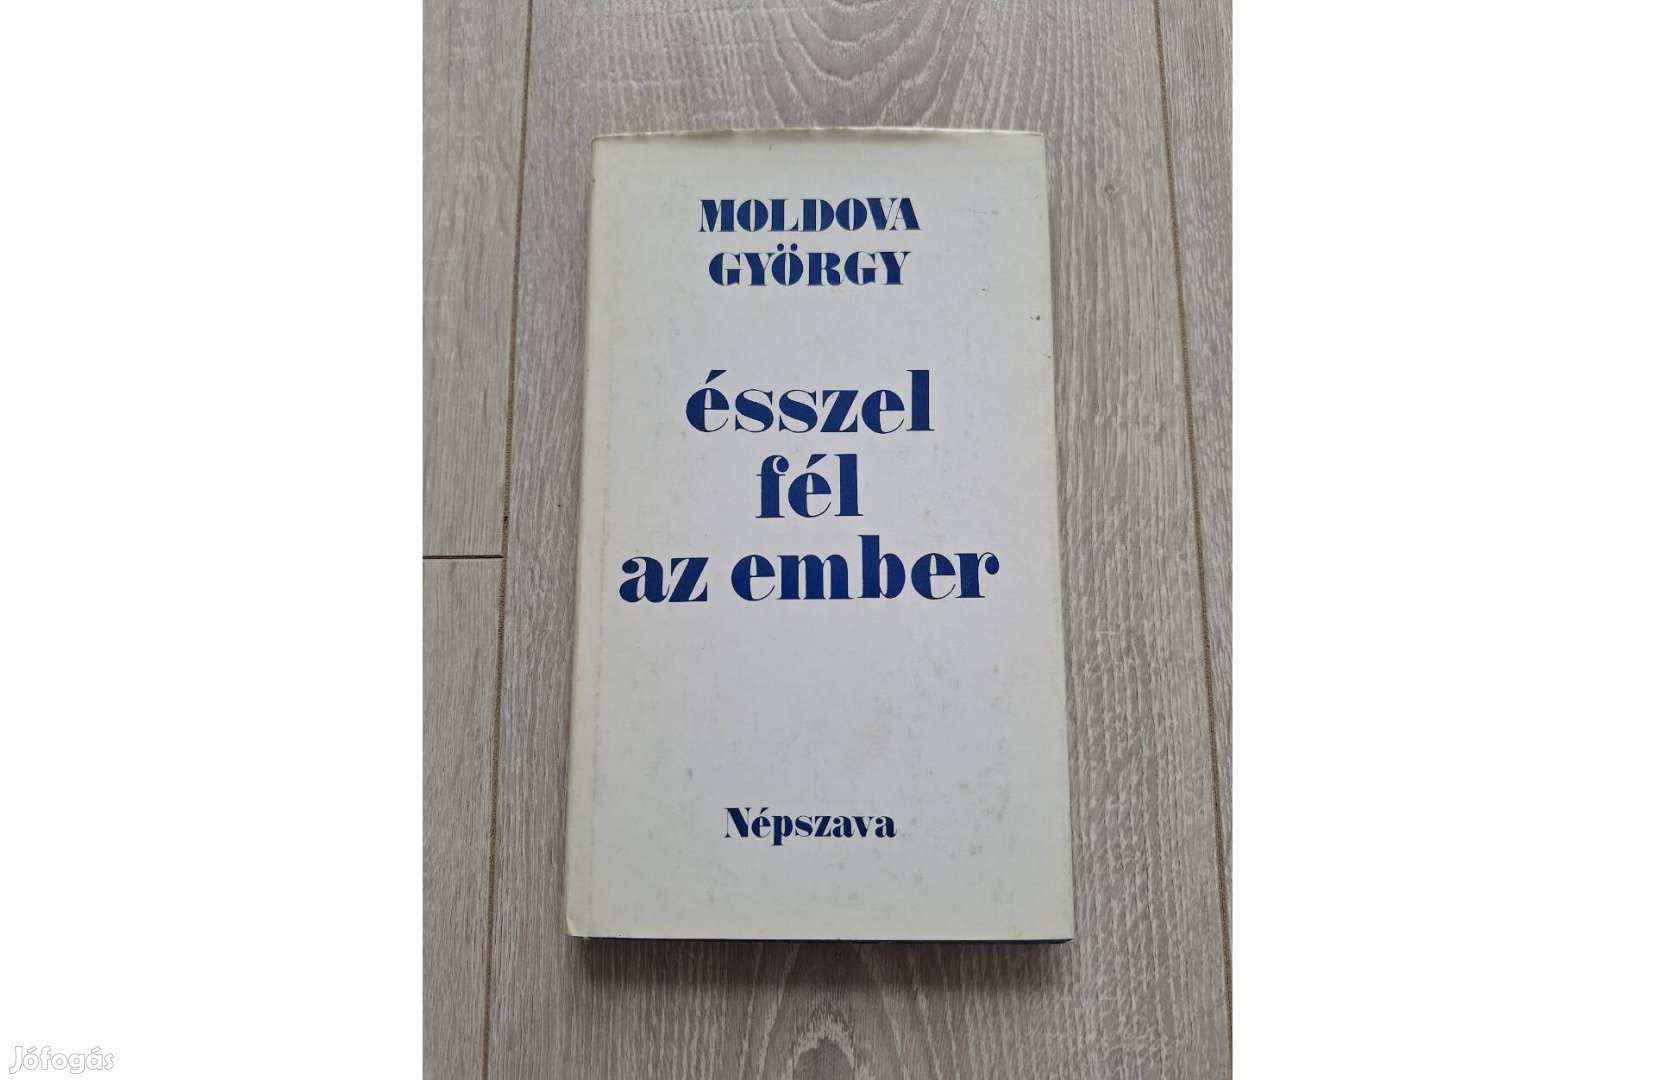 Moldova György: Ésszel fél az ember c. könyv